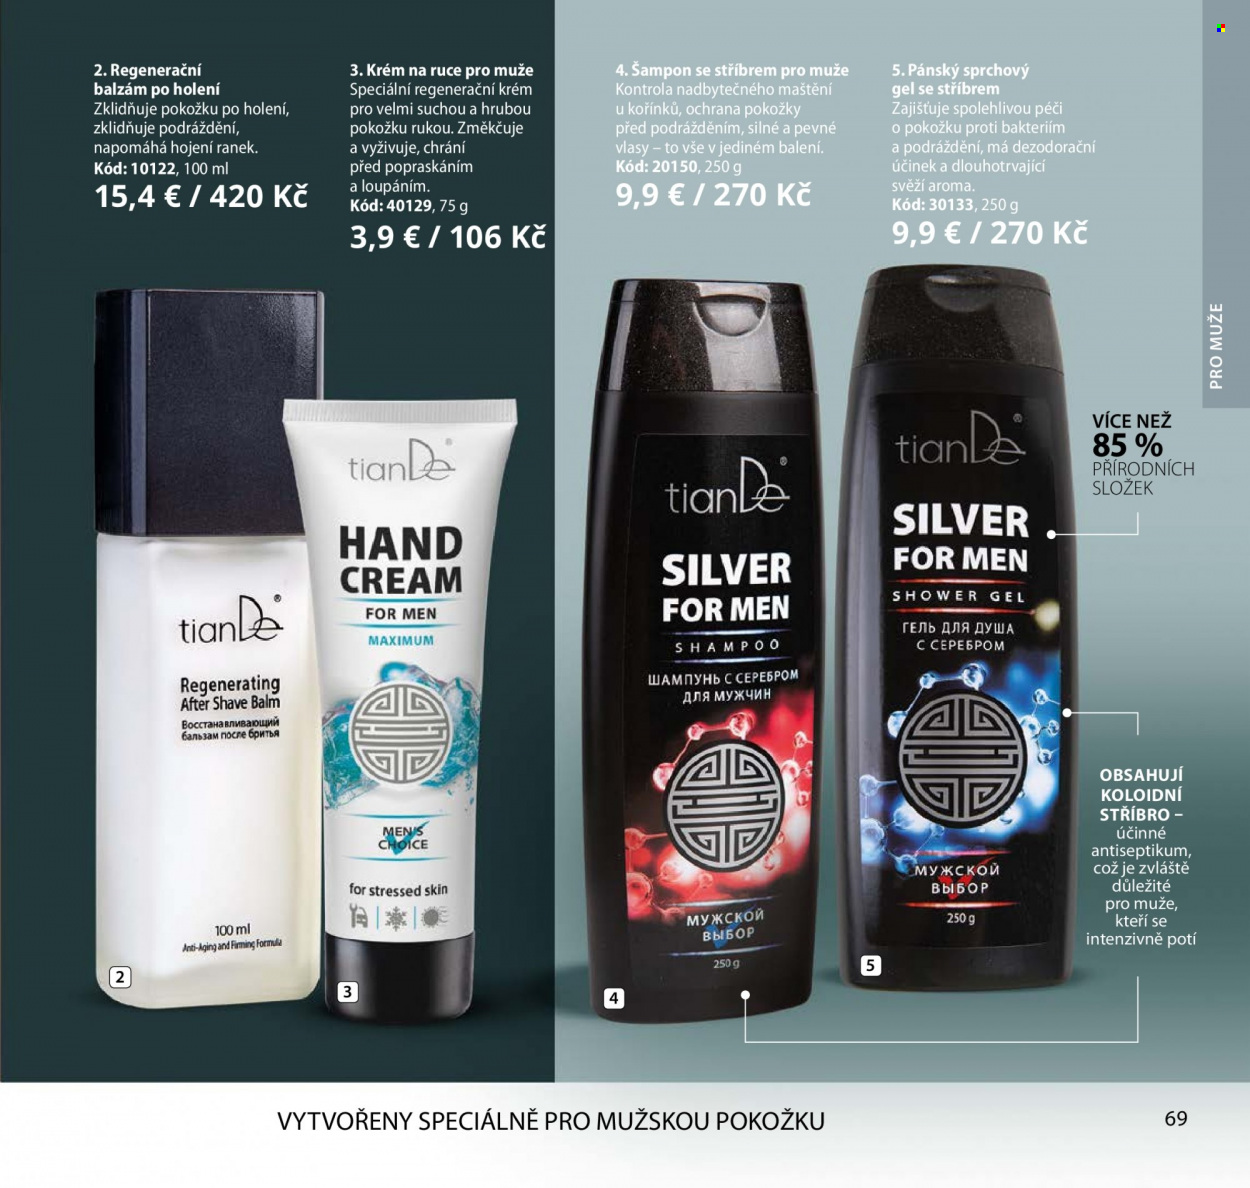 thumbnail - Leták TianDe - Produkty v akci - sprchový gel, šampón, regenerační krém, krém, balzám po holení. Strana 69.